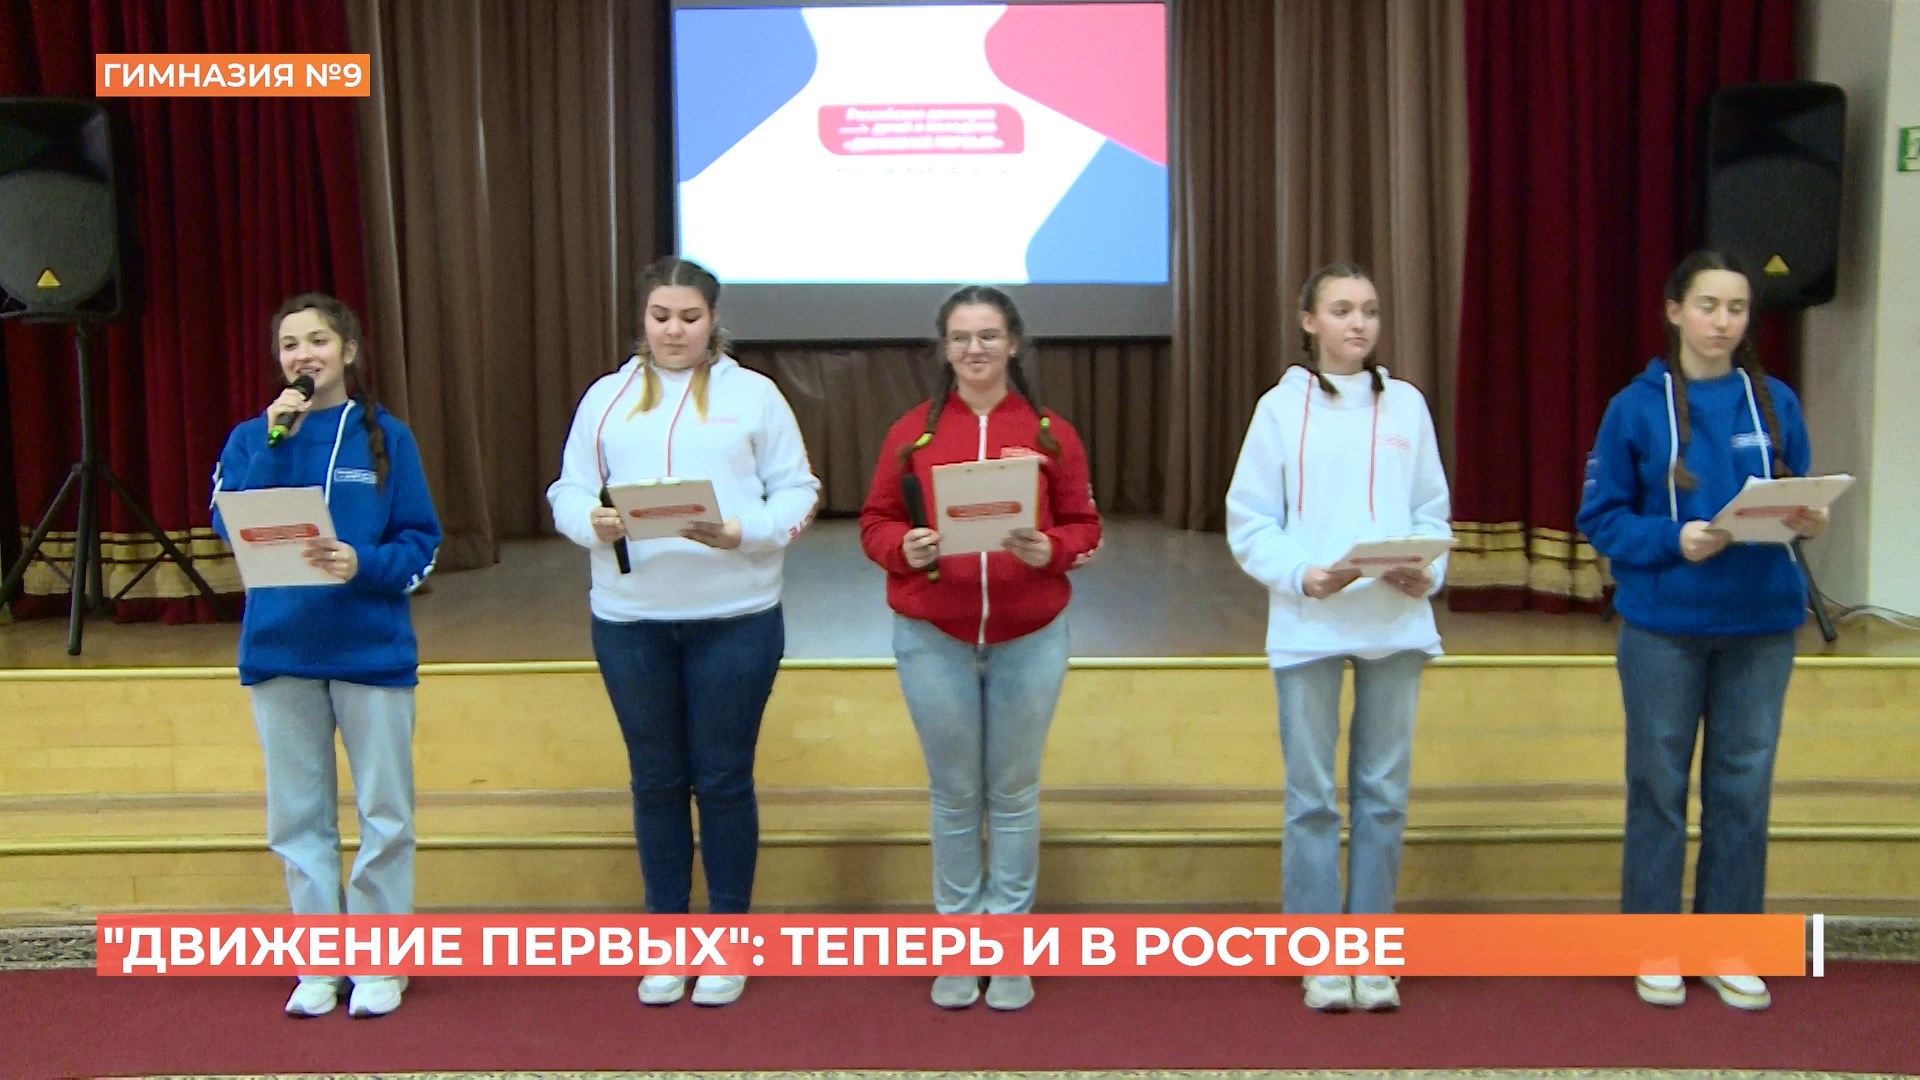 Региональное отделение нового движения школьников открылось в Ростове